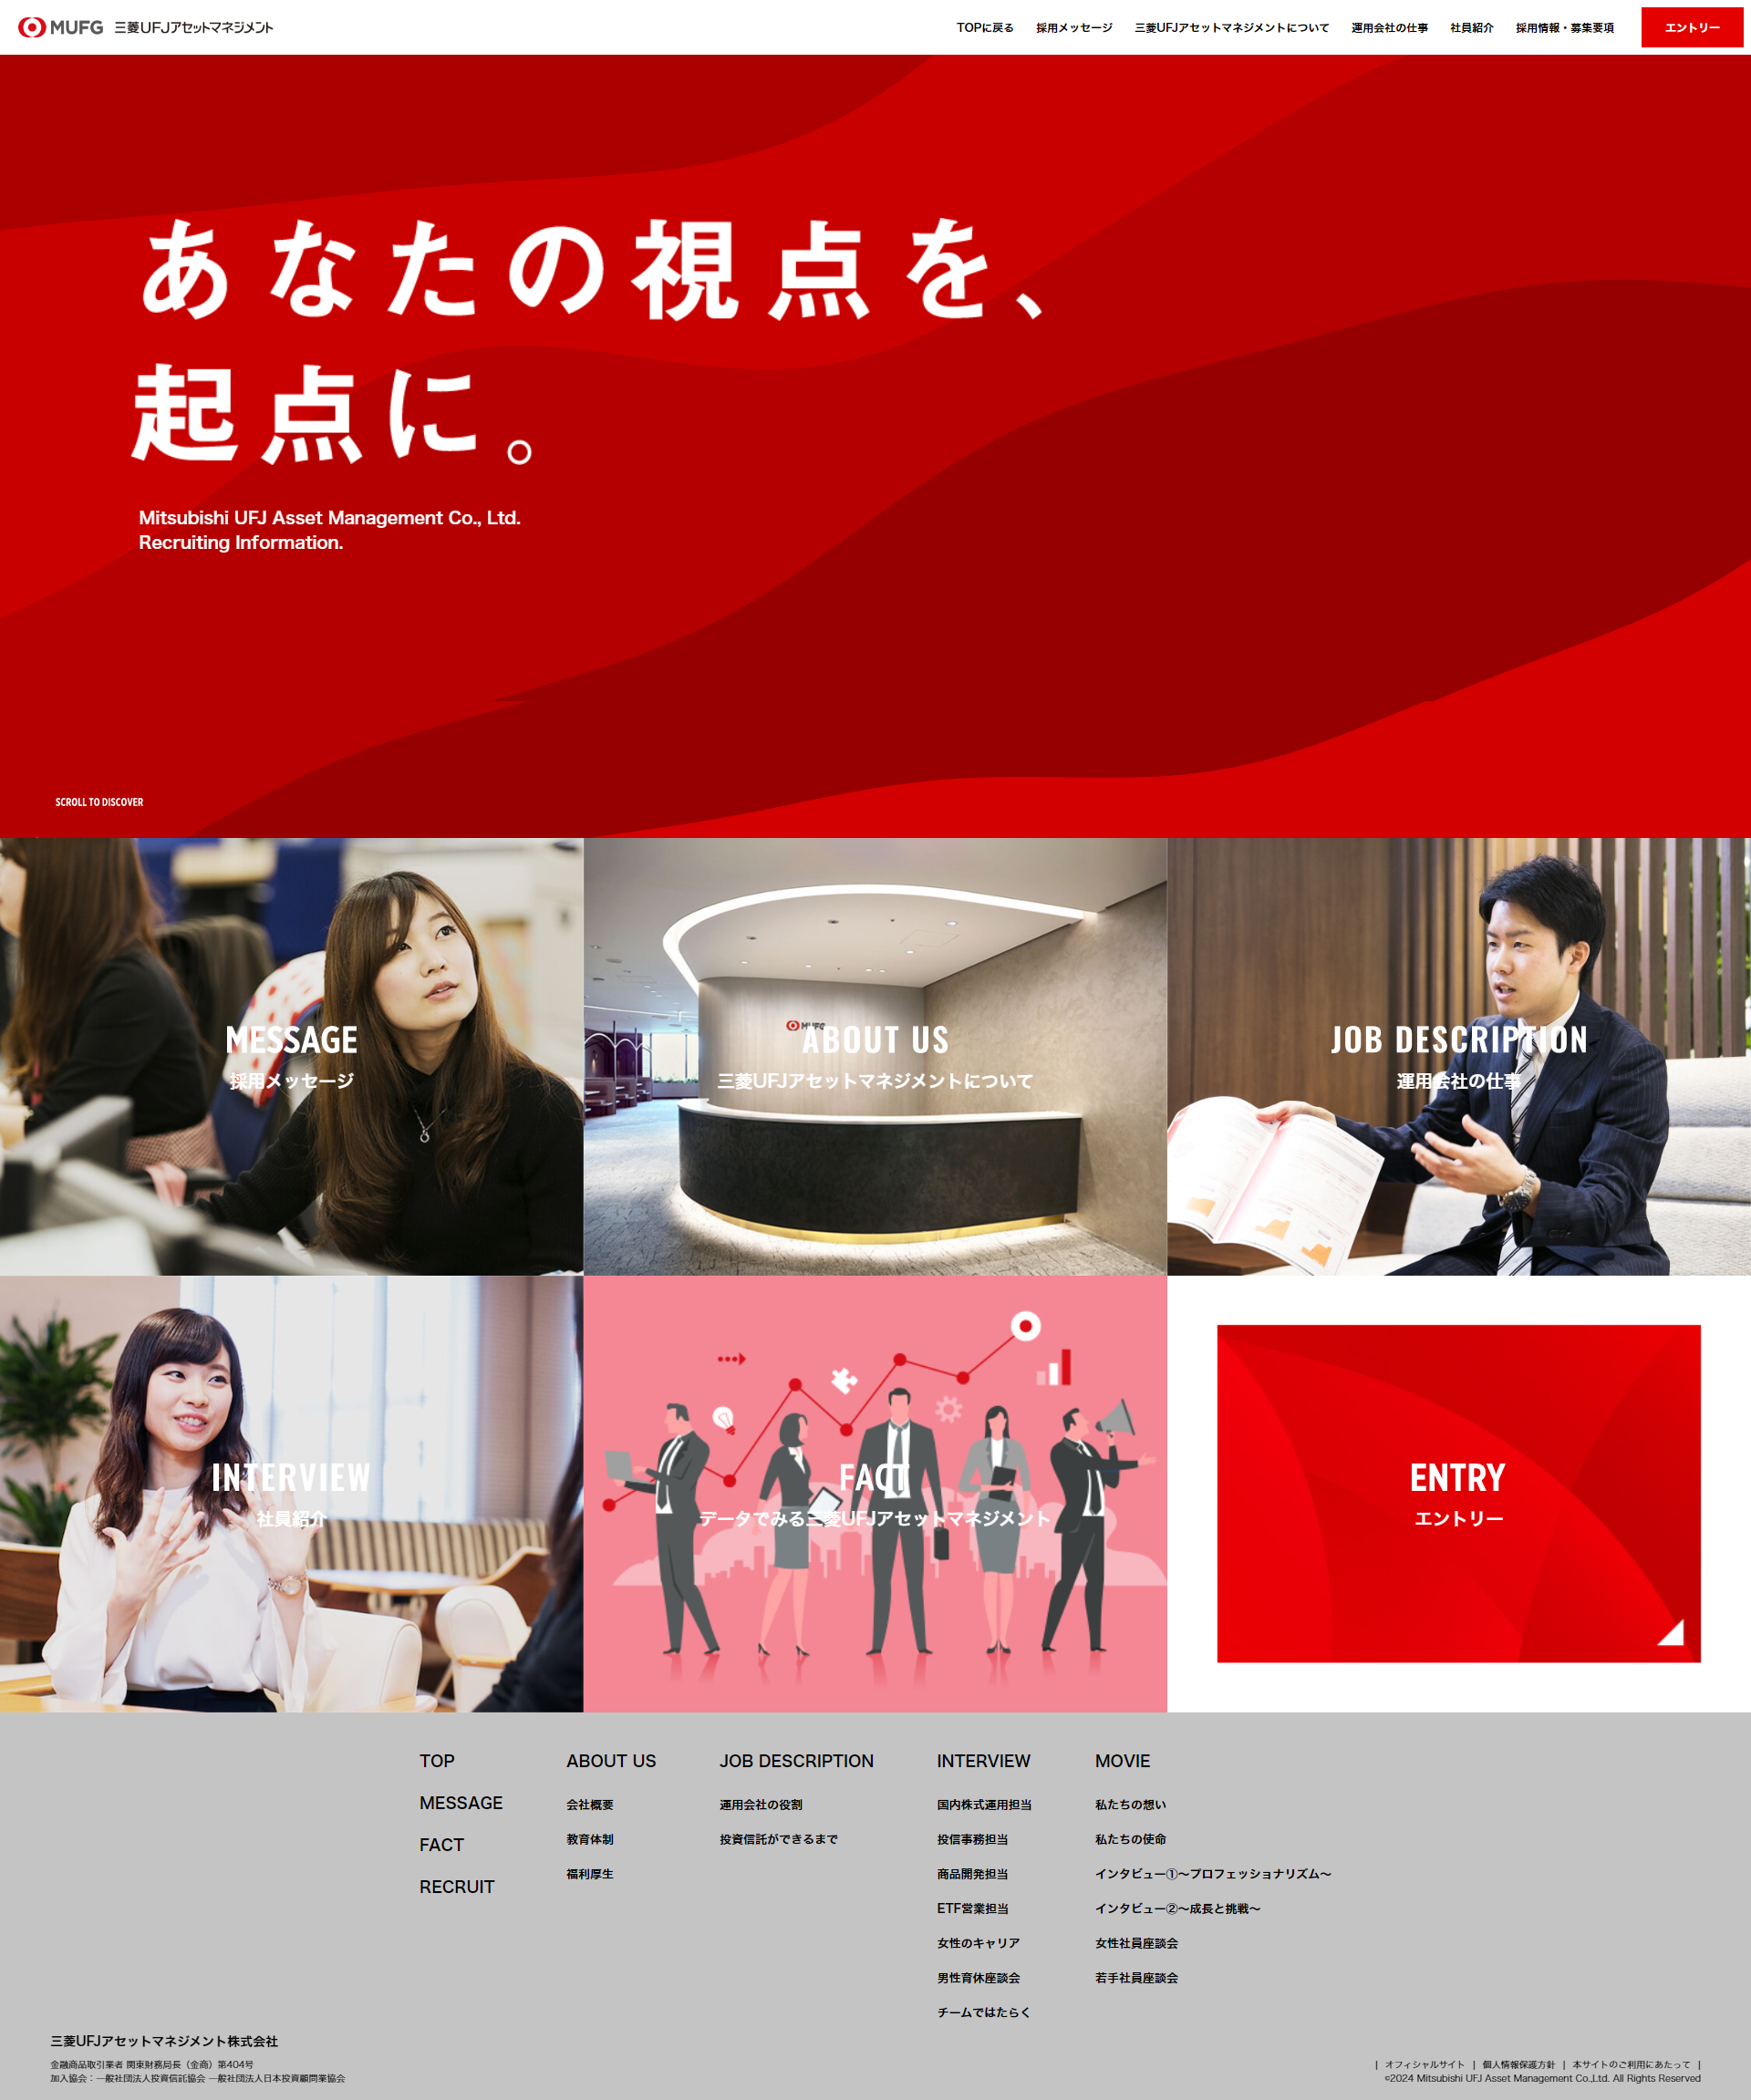 三菱UFJアセットマネジメント株式会社 新卒採用情報サイト